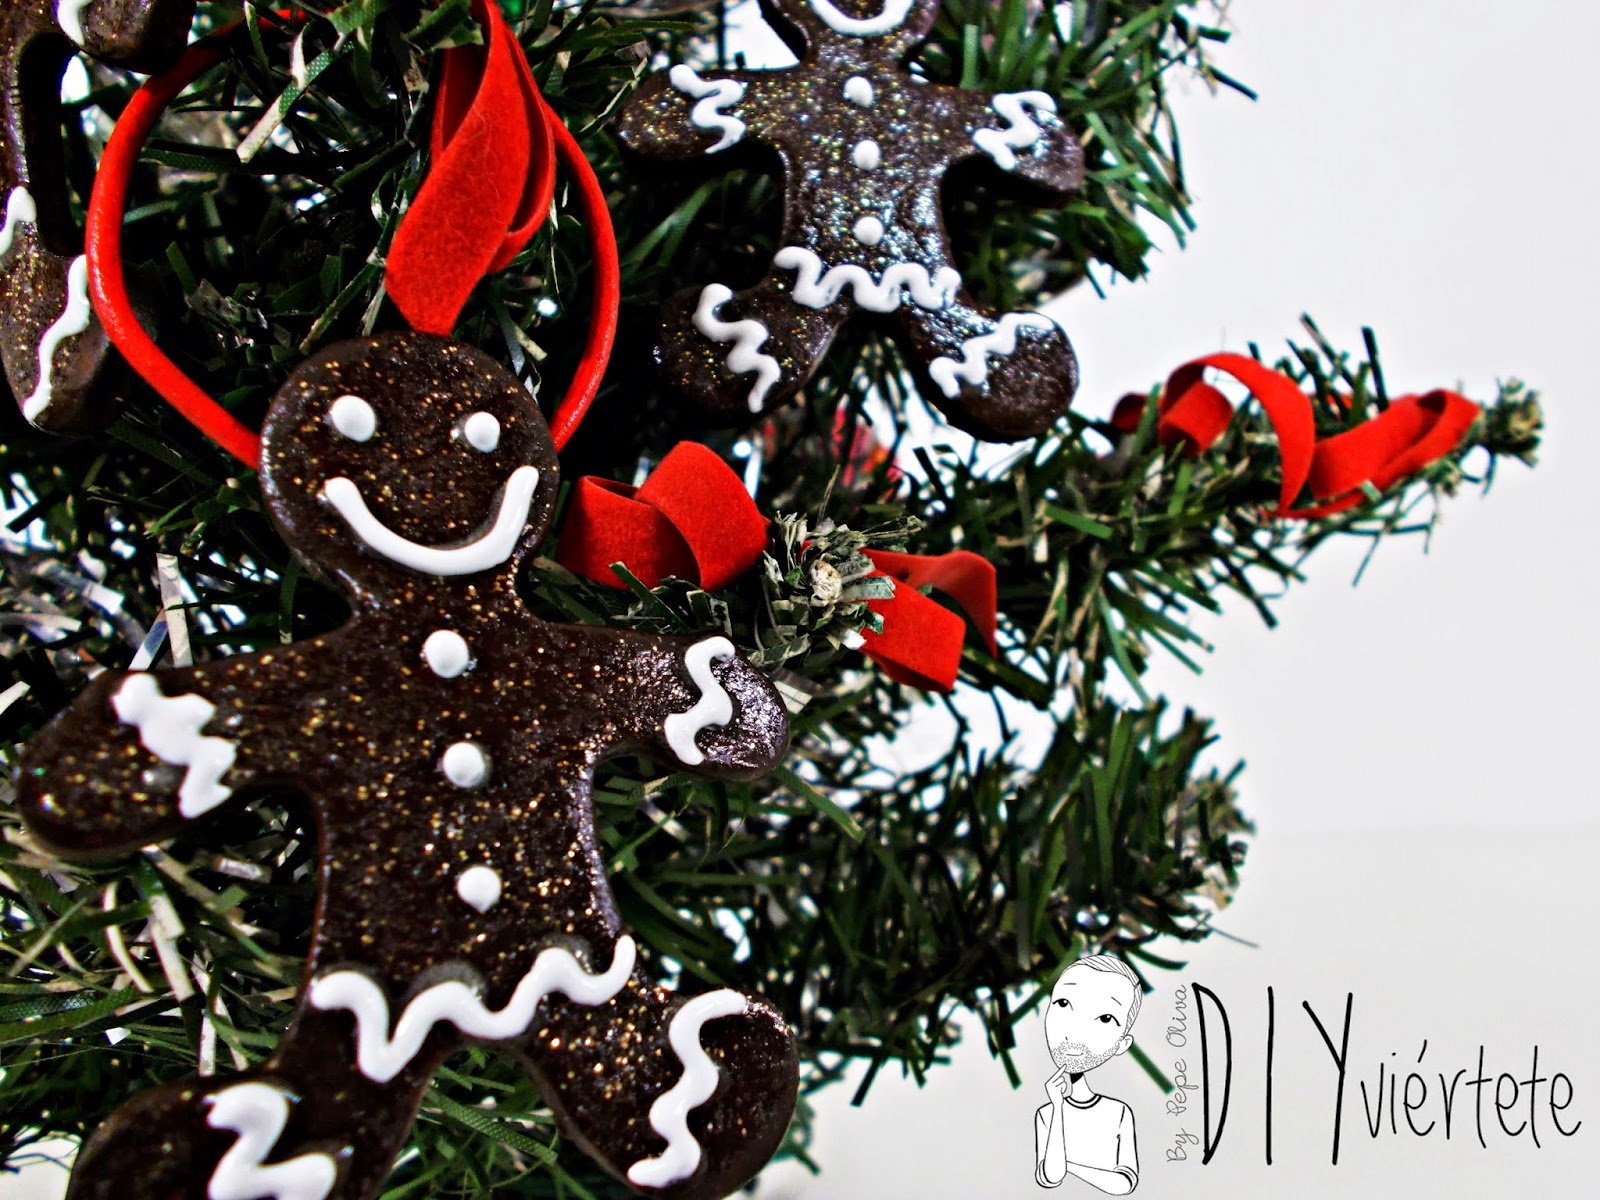 DIY-adorno navideño-ideas decoración-pasta de modelar-porcelana fria-fimo-arcilla polimérica-galleta-muñeco jengibre-Navidad- (2)